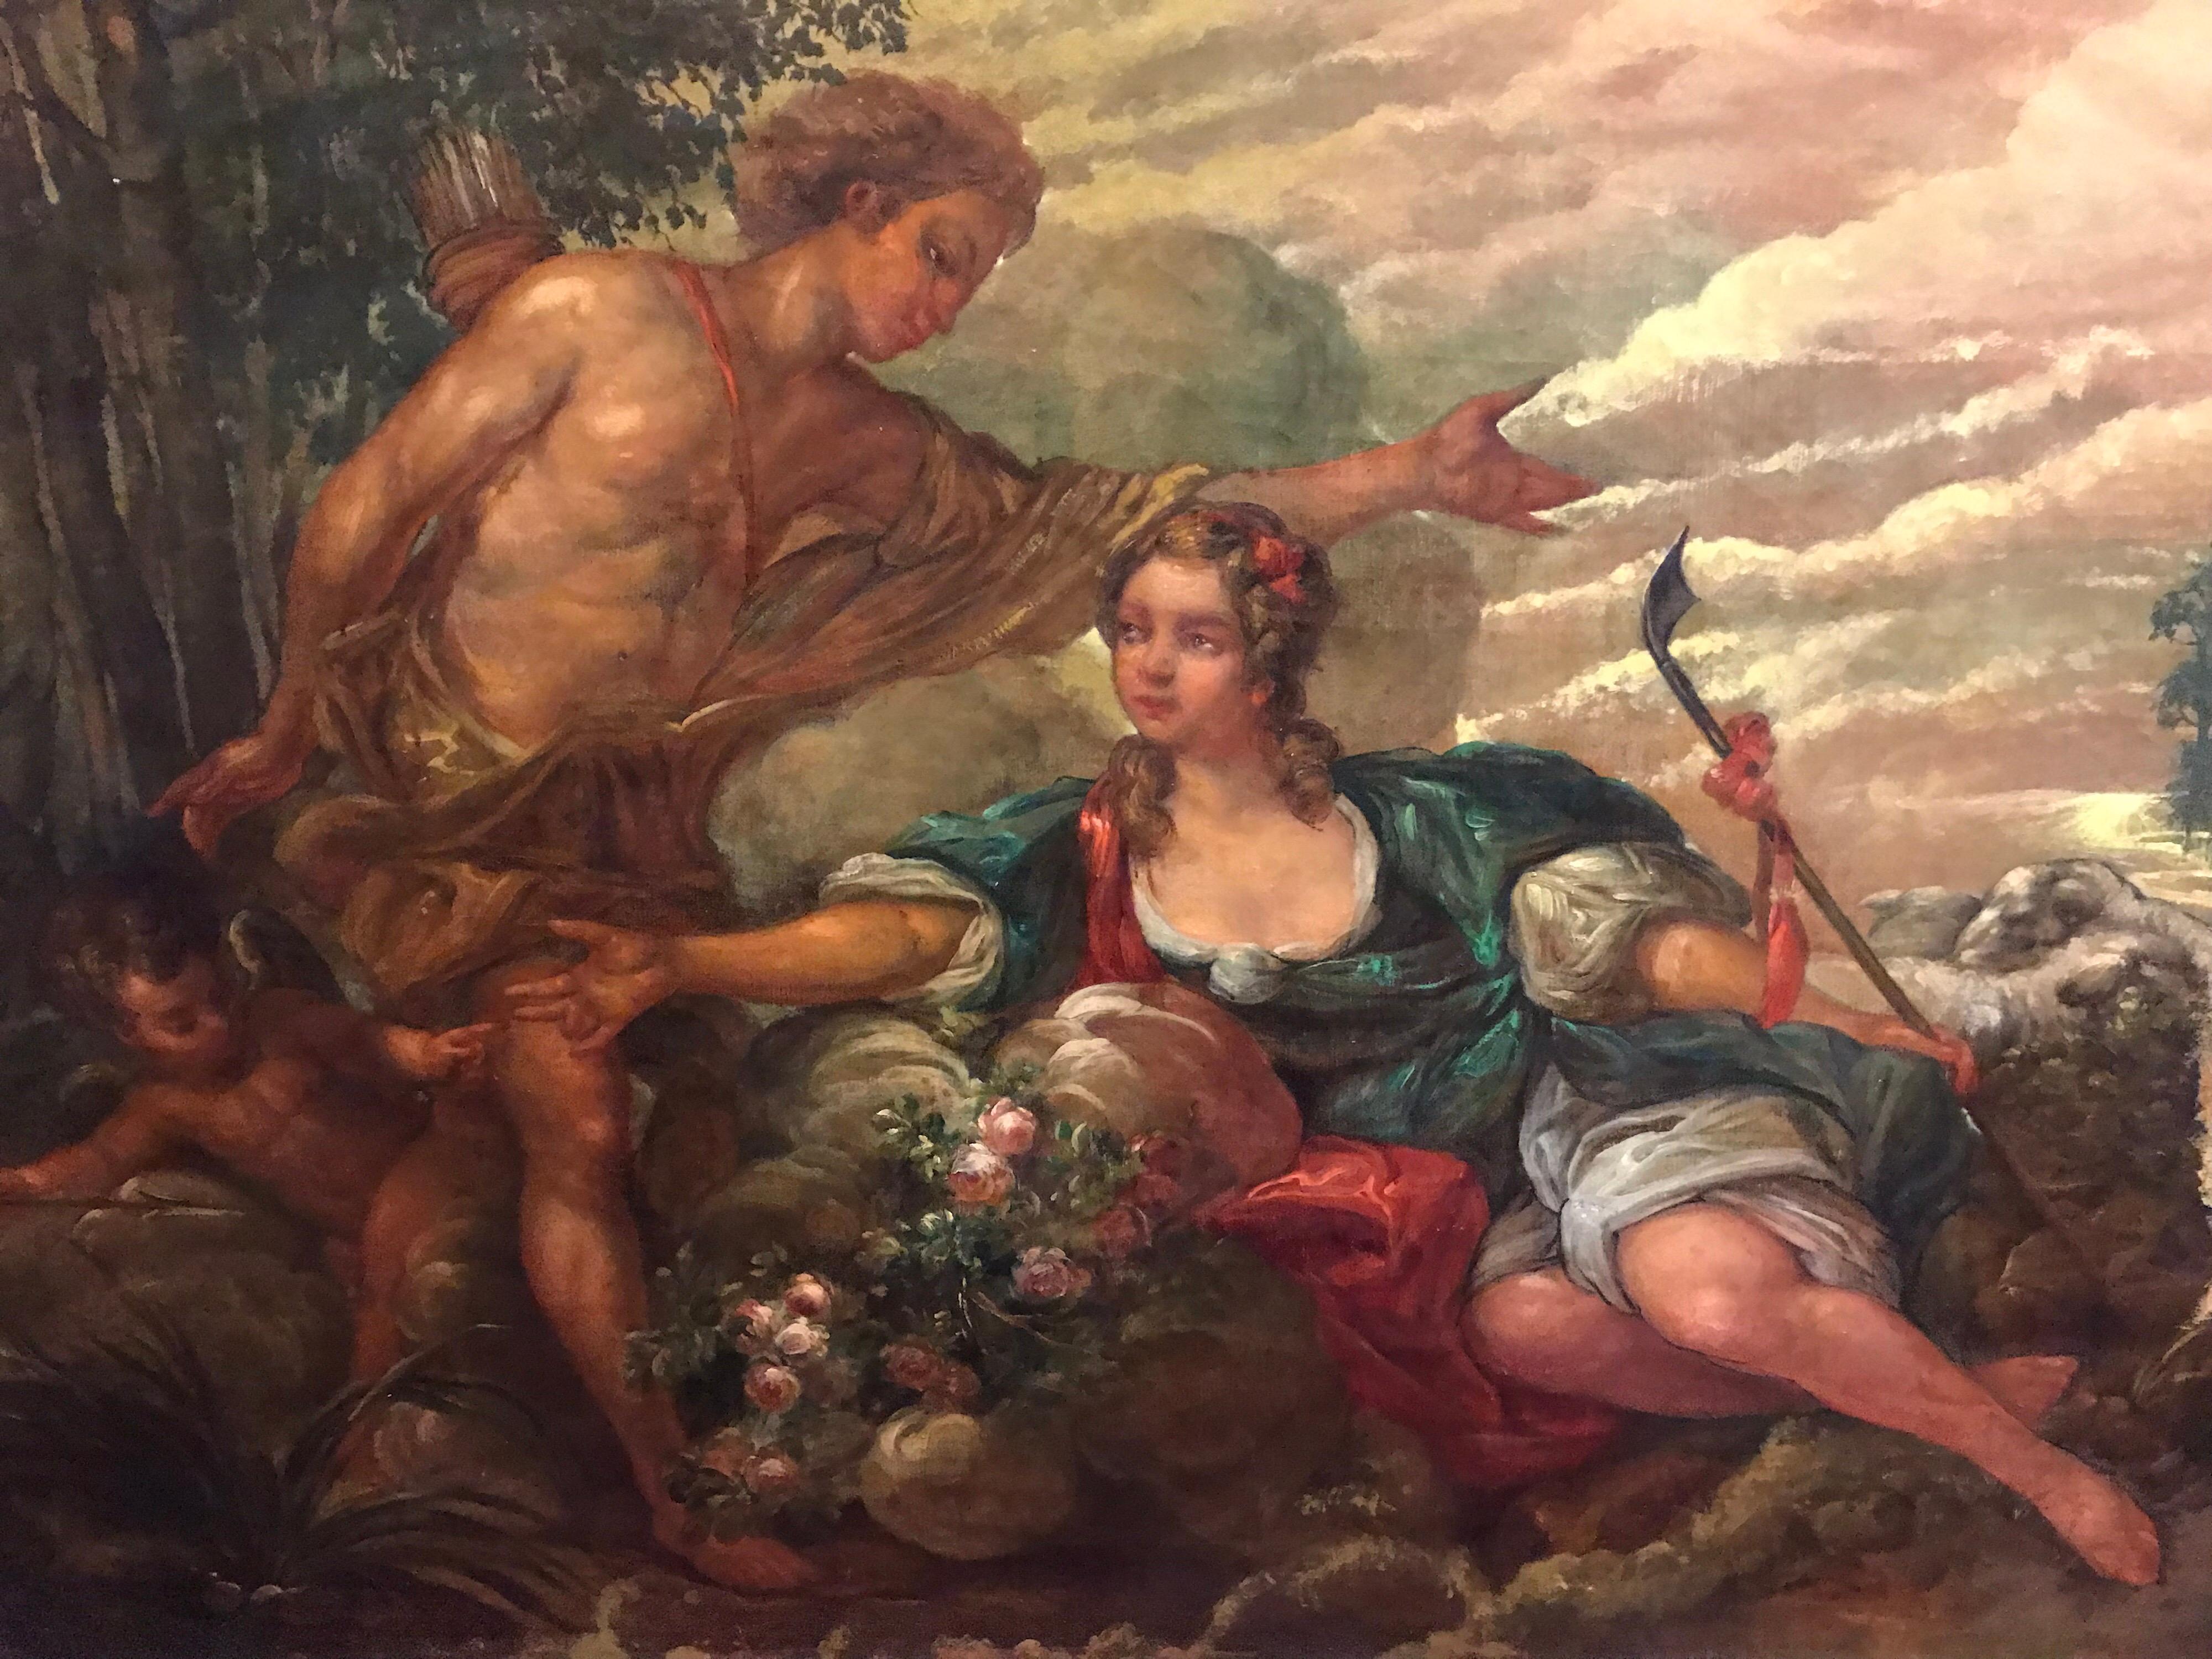 Landscape Painting French Rococo - Grande peinture à l'huile rococo française ancienne - Lovers mythologiques dans un paysage